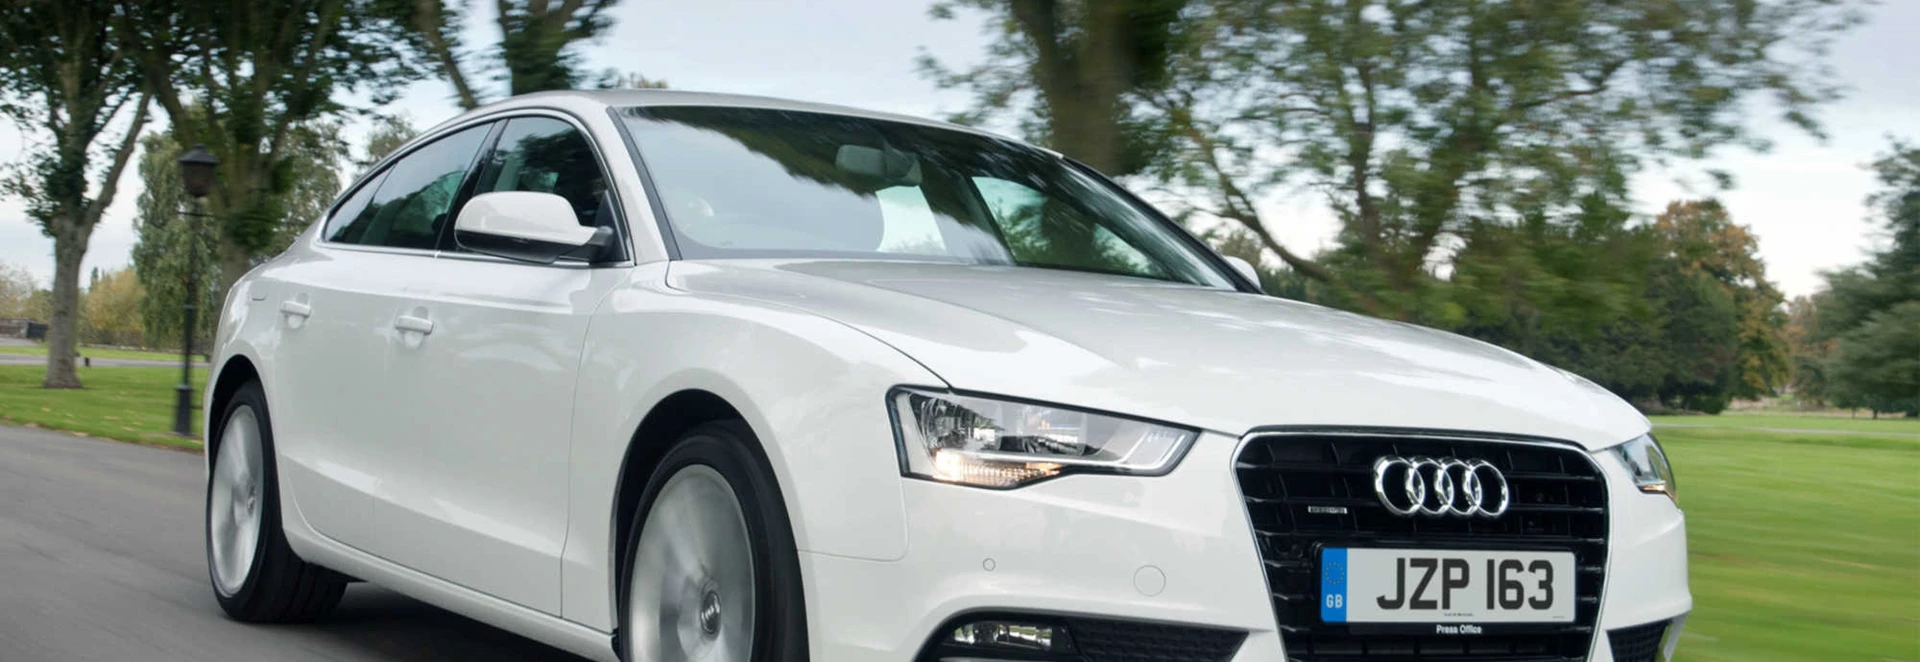 Audi A5 Sportback review 